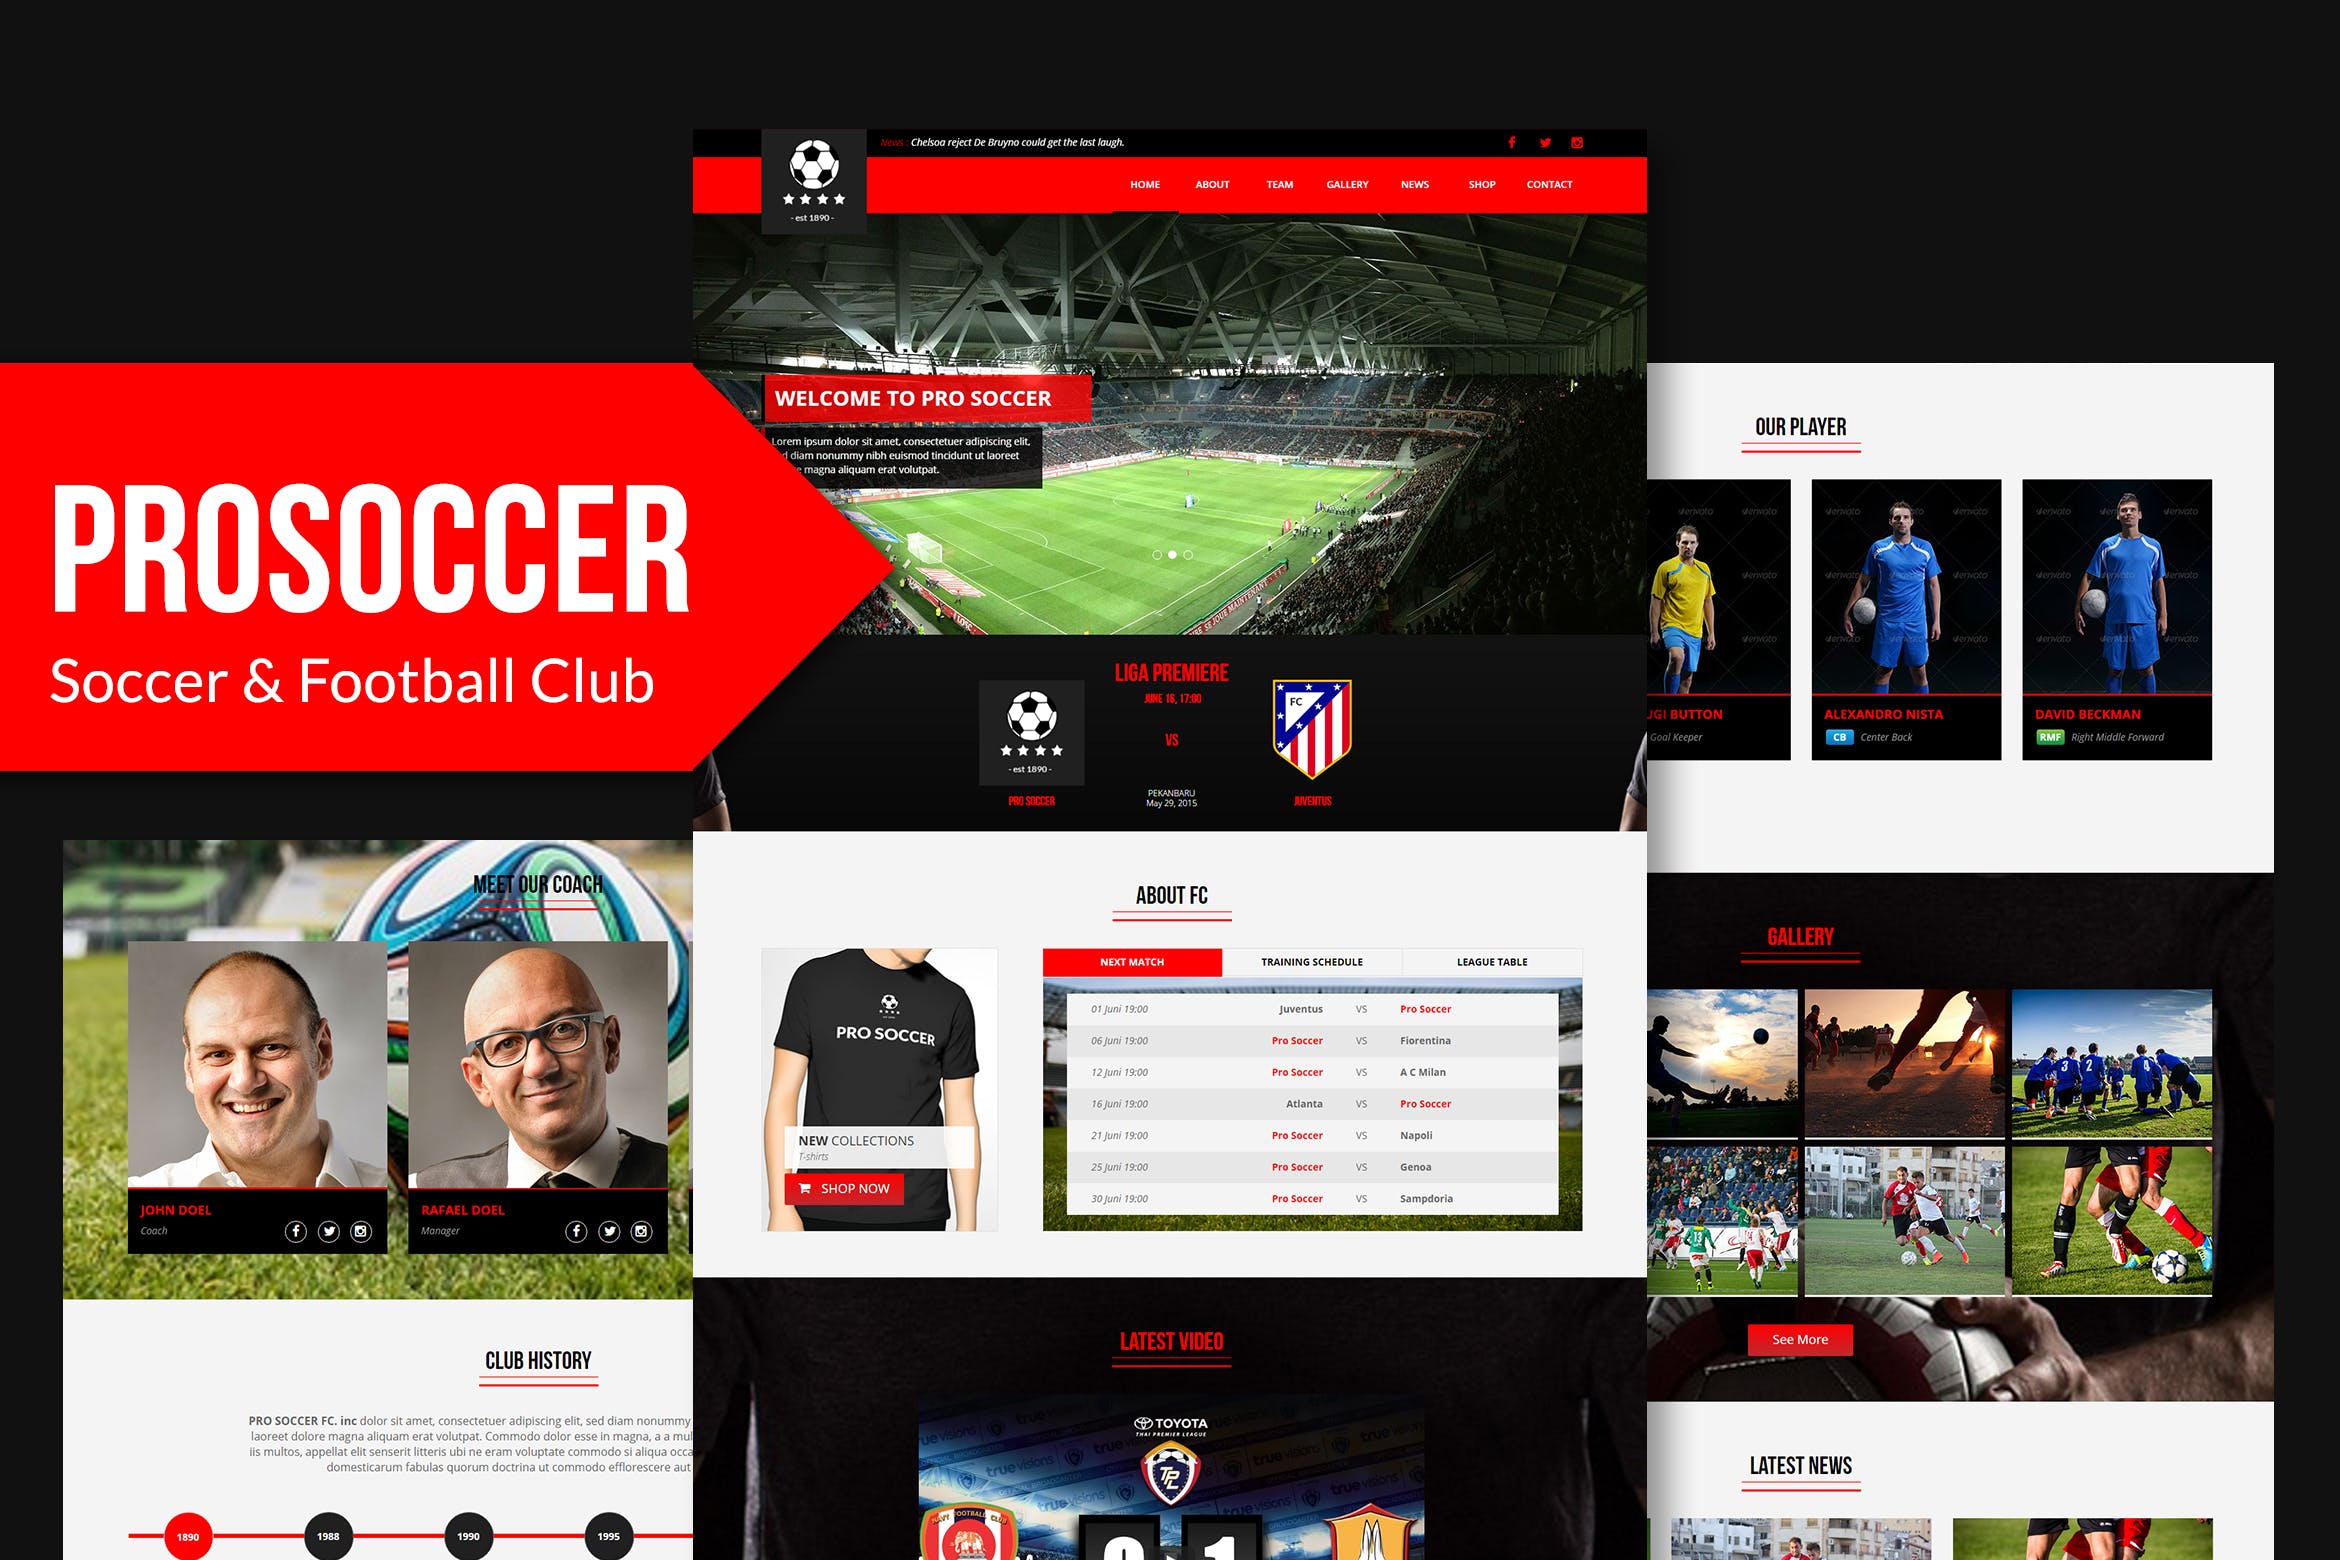 足球俱乐部网站设计Muse模板非凡图库精选 Pro Soccer – Football & Soccer Club Muse Template插图